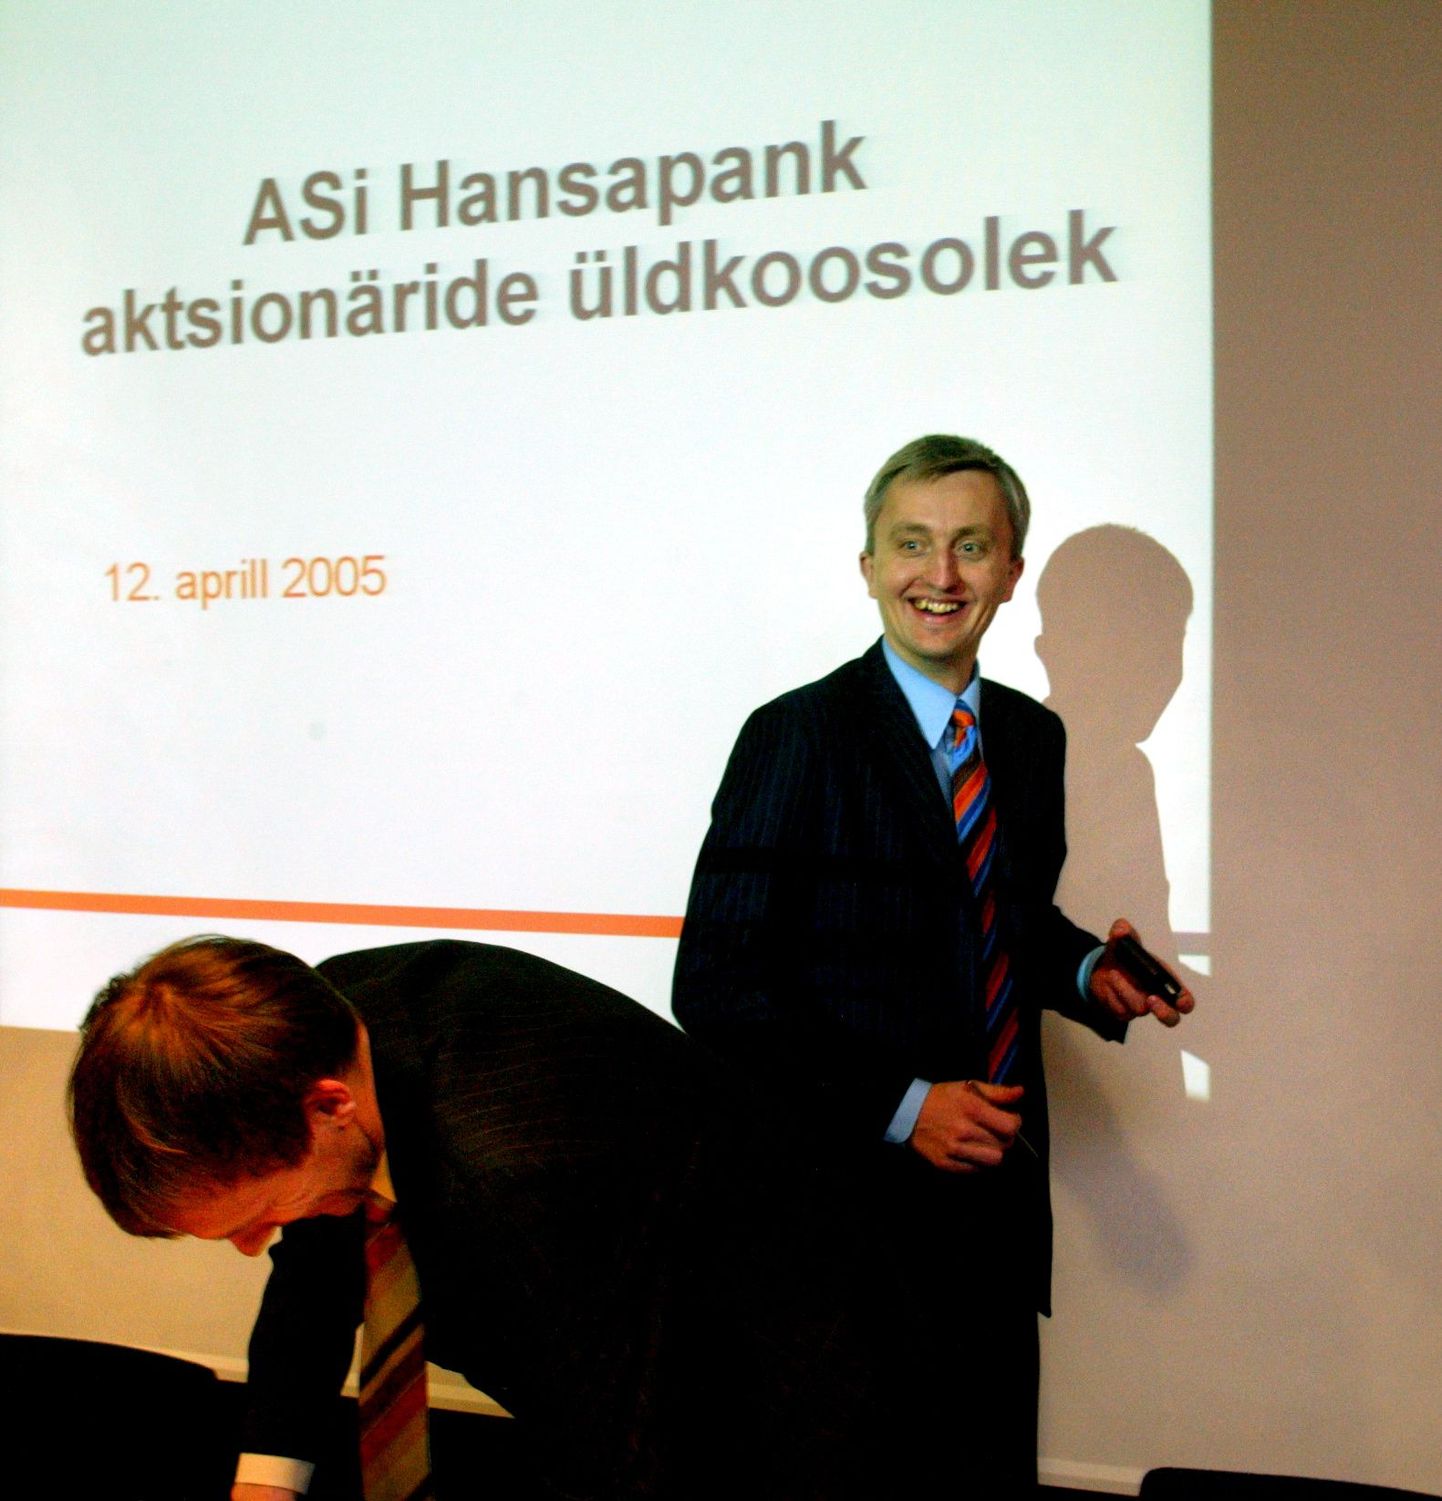 Hansapanga aktsionäride üldkoosolek 2005. aasta aprillis, kus otsustati heaks kiita Eesti ettevõtlusajaloo suurim ülevõtmine.